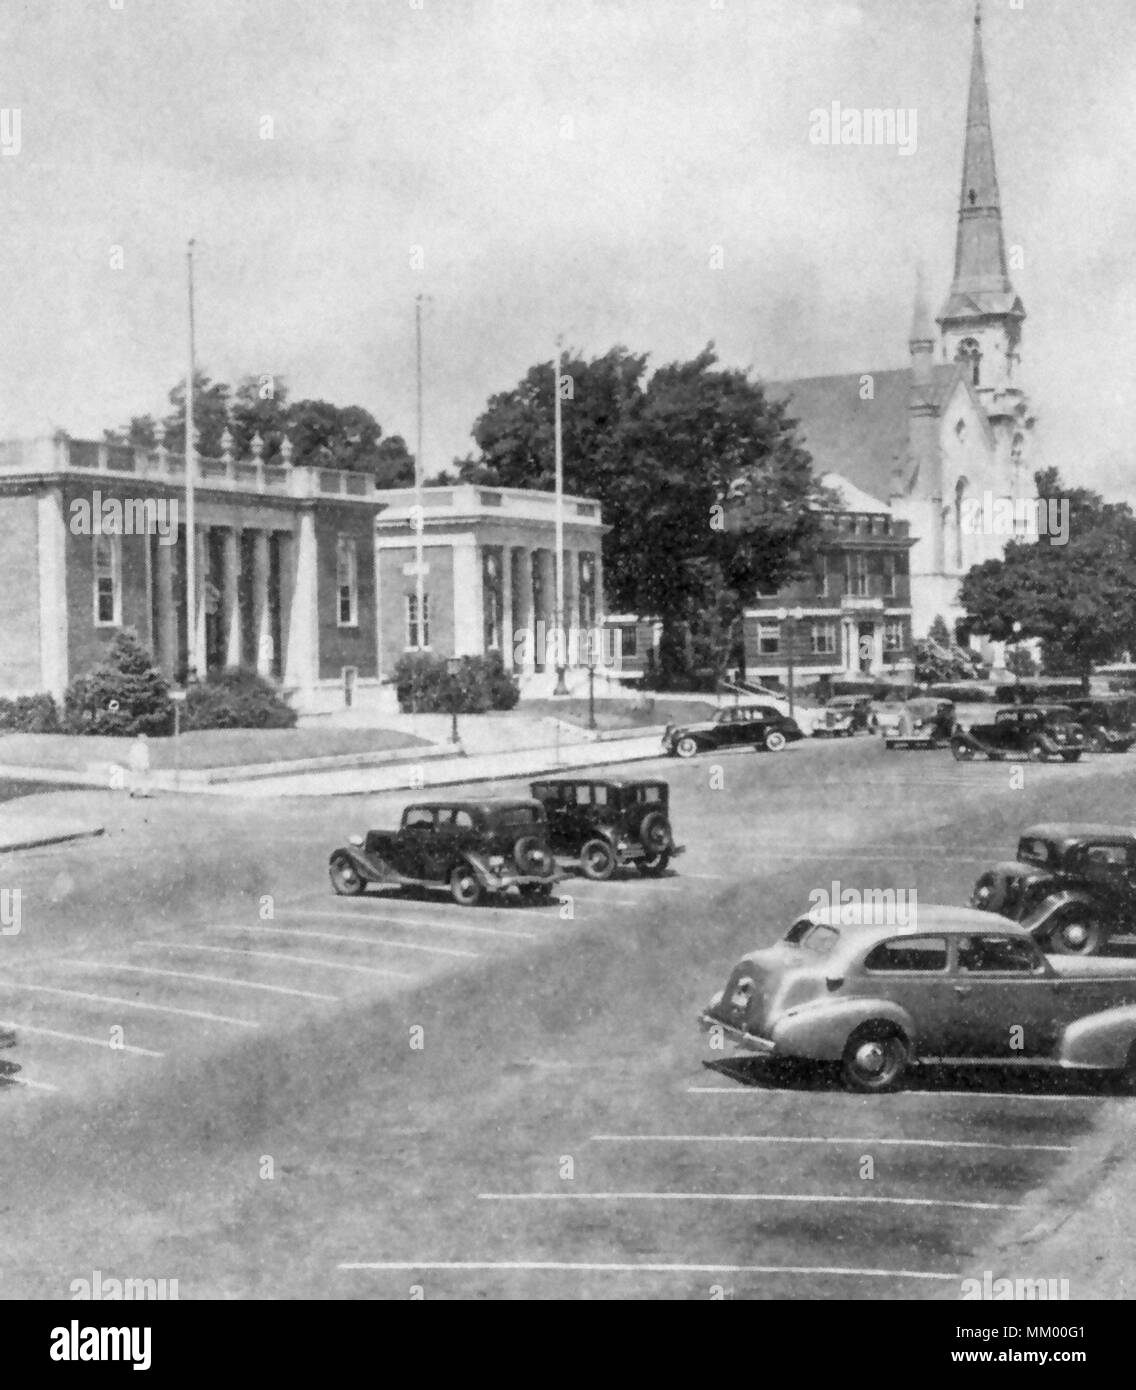 Il centro civico. Wakefield. 1940 Foto Stock